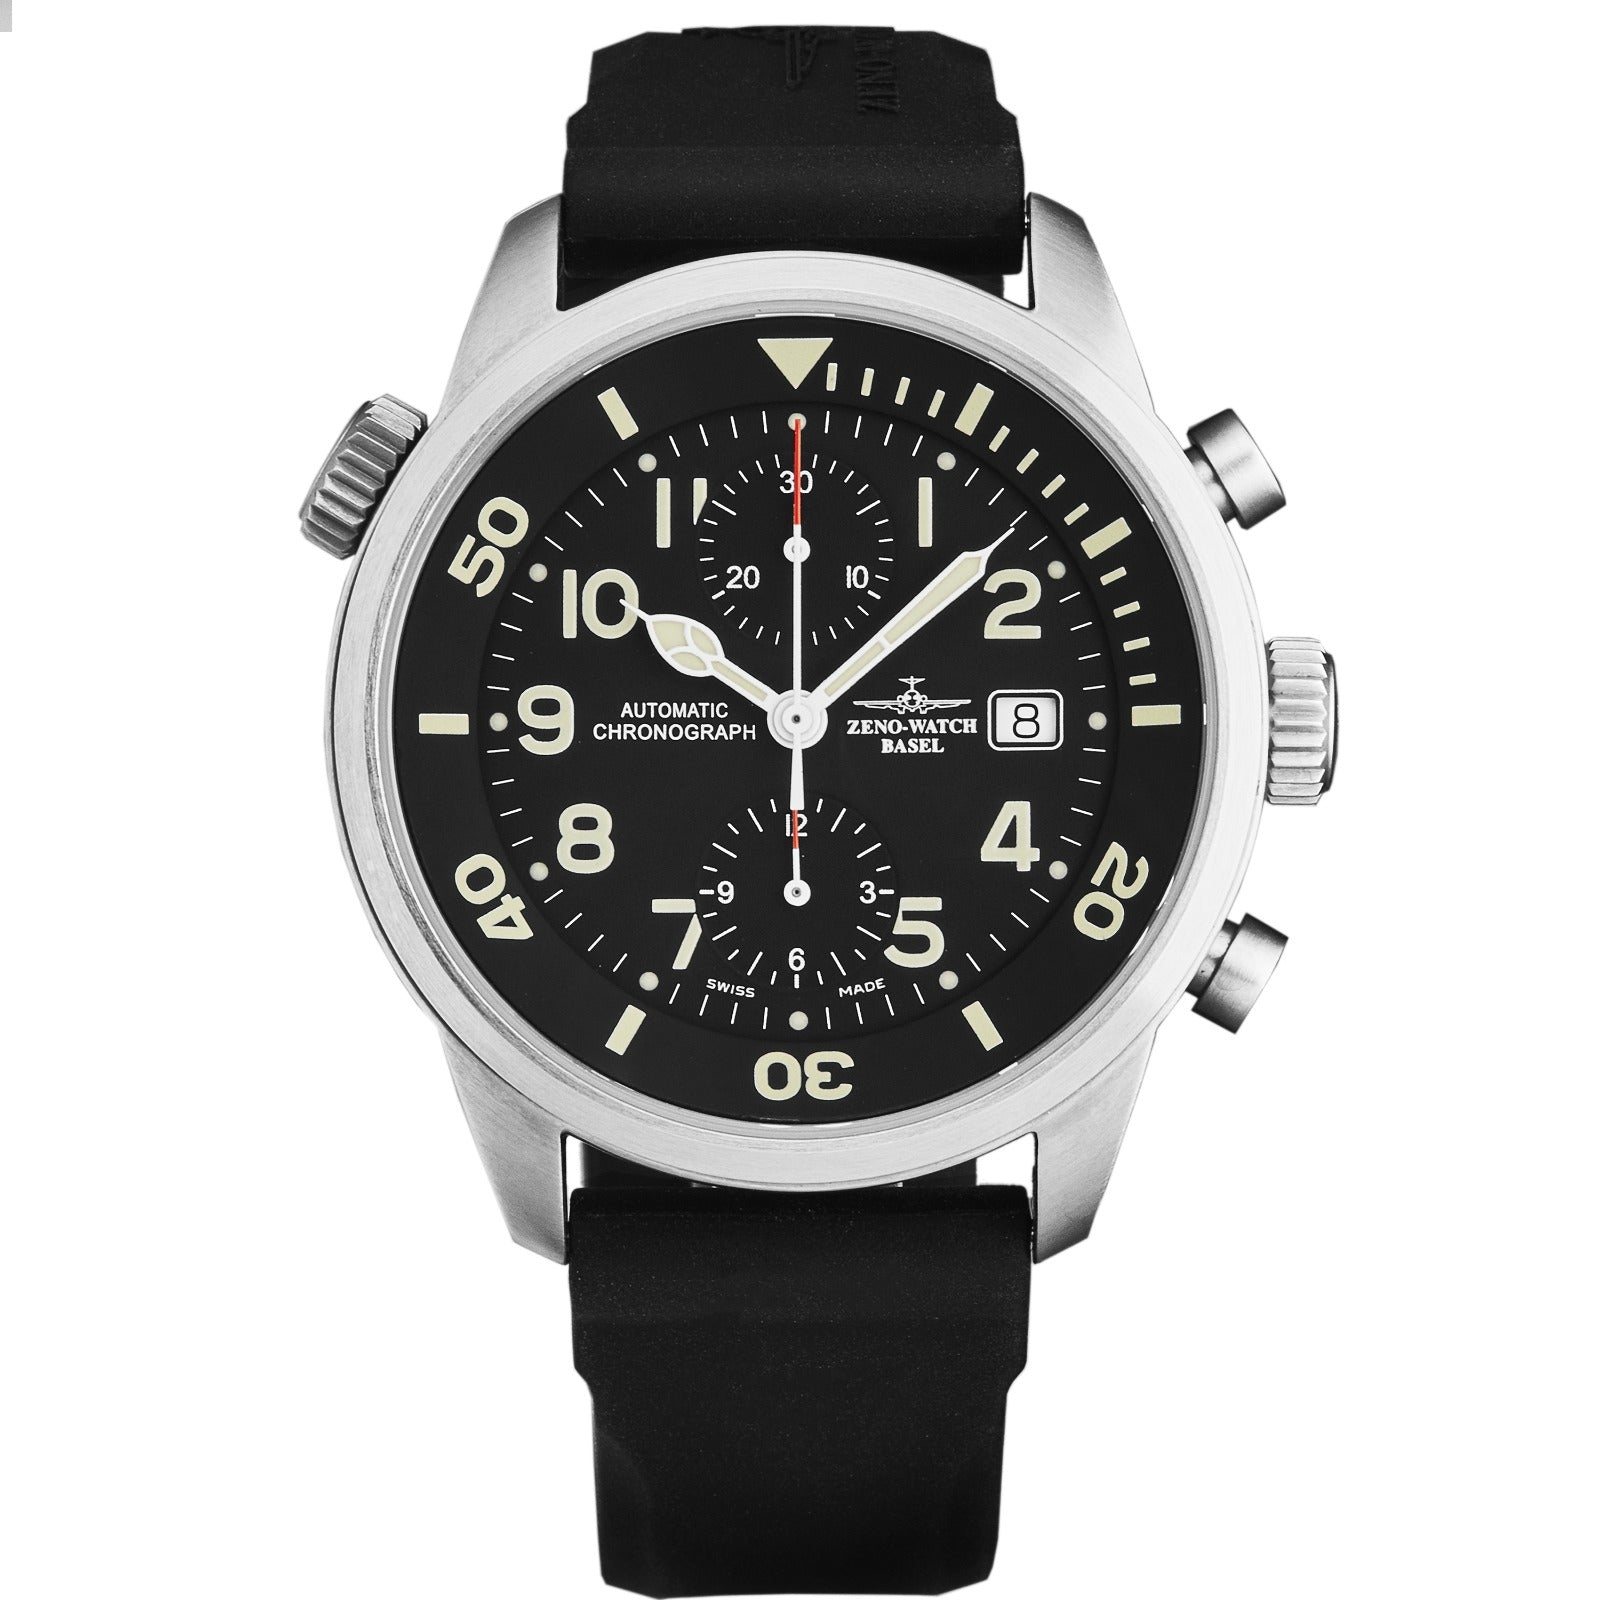 Zeno-Watch Basel Fellow Bicompax Chronograph